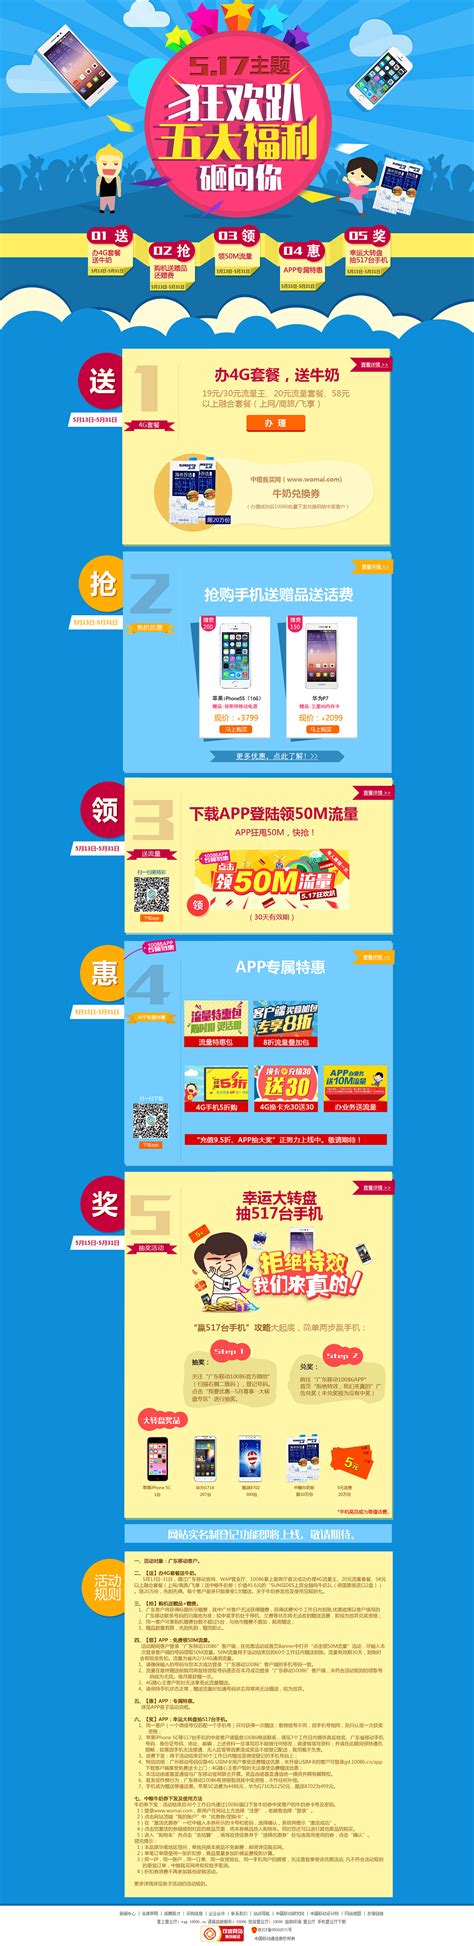 蓝色科技感广交会首届线上广交会宣传海报PSD免费下载 - 图星人